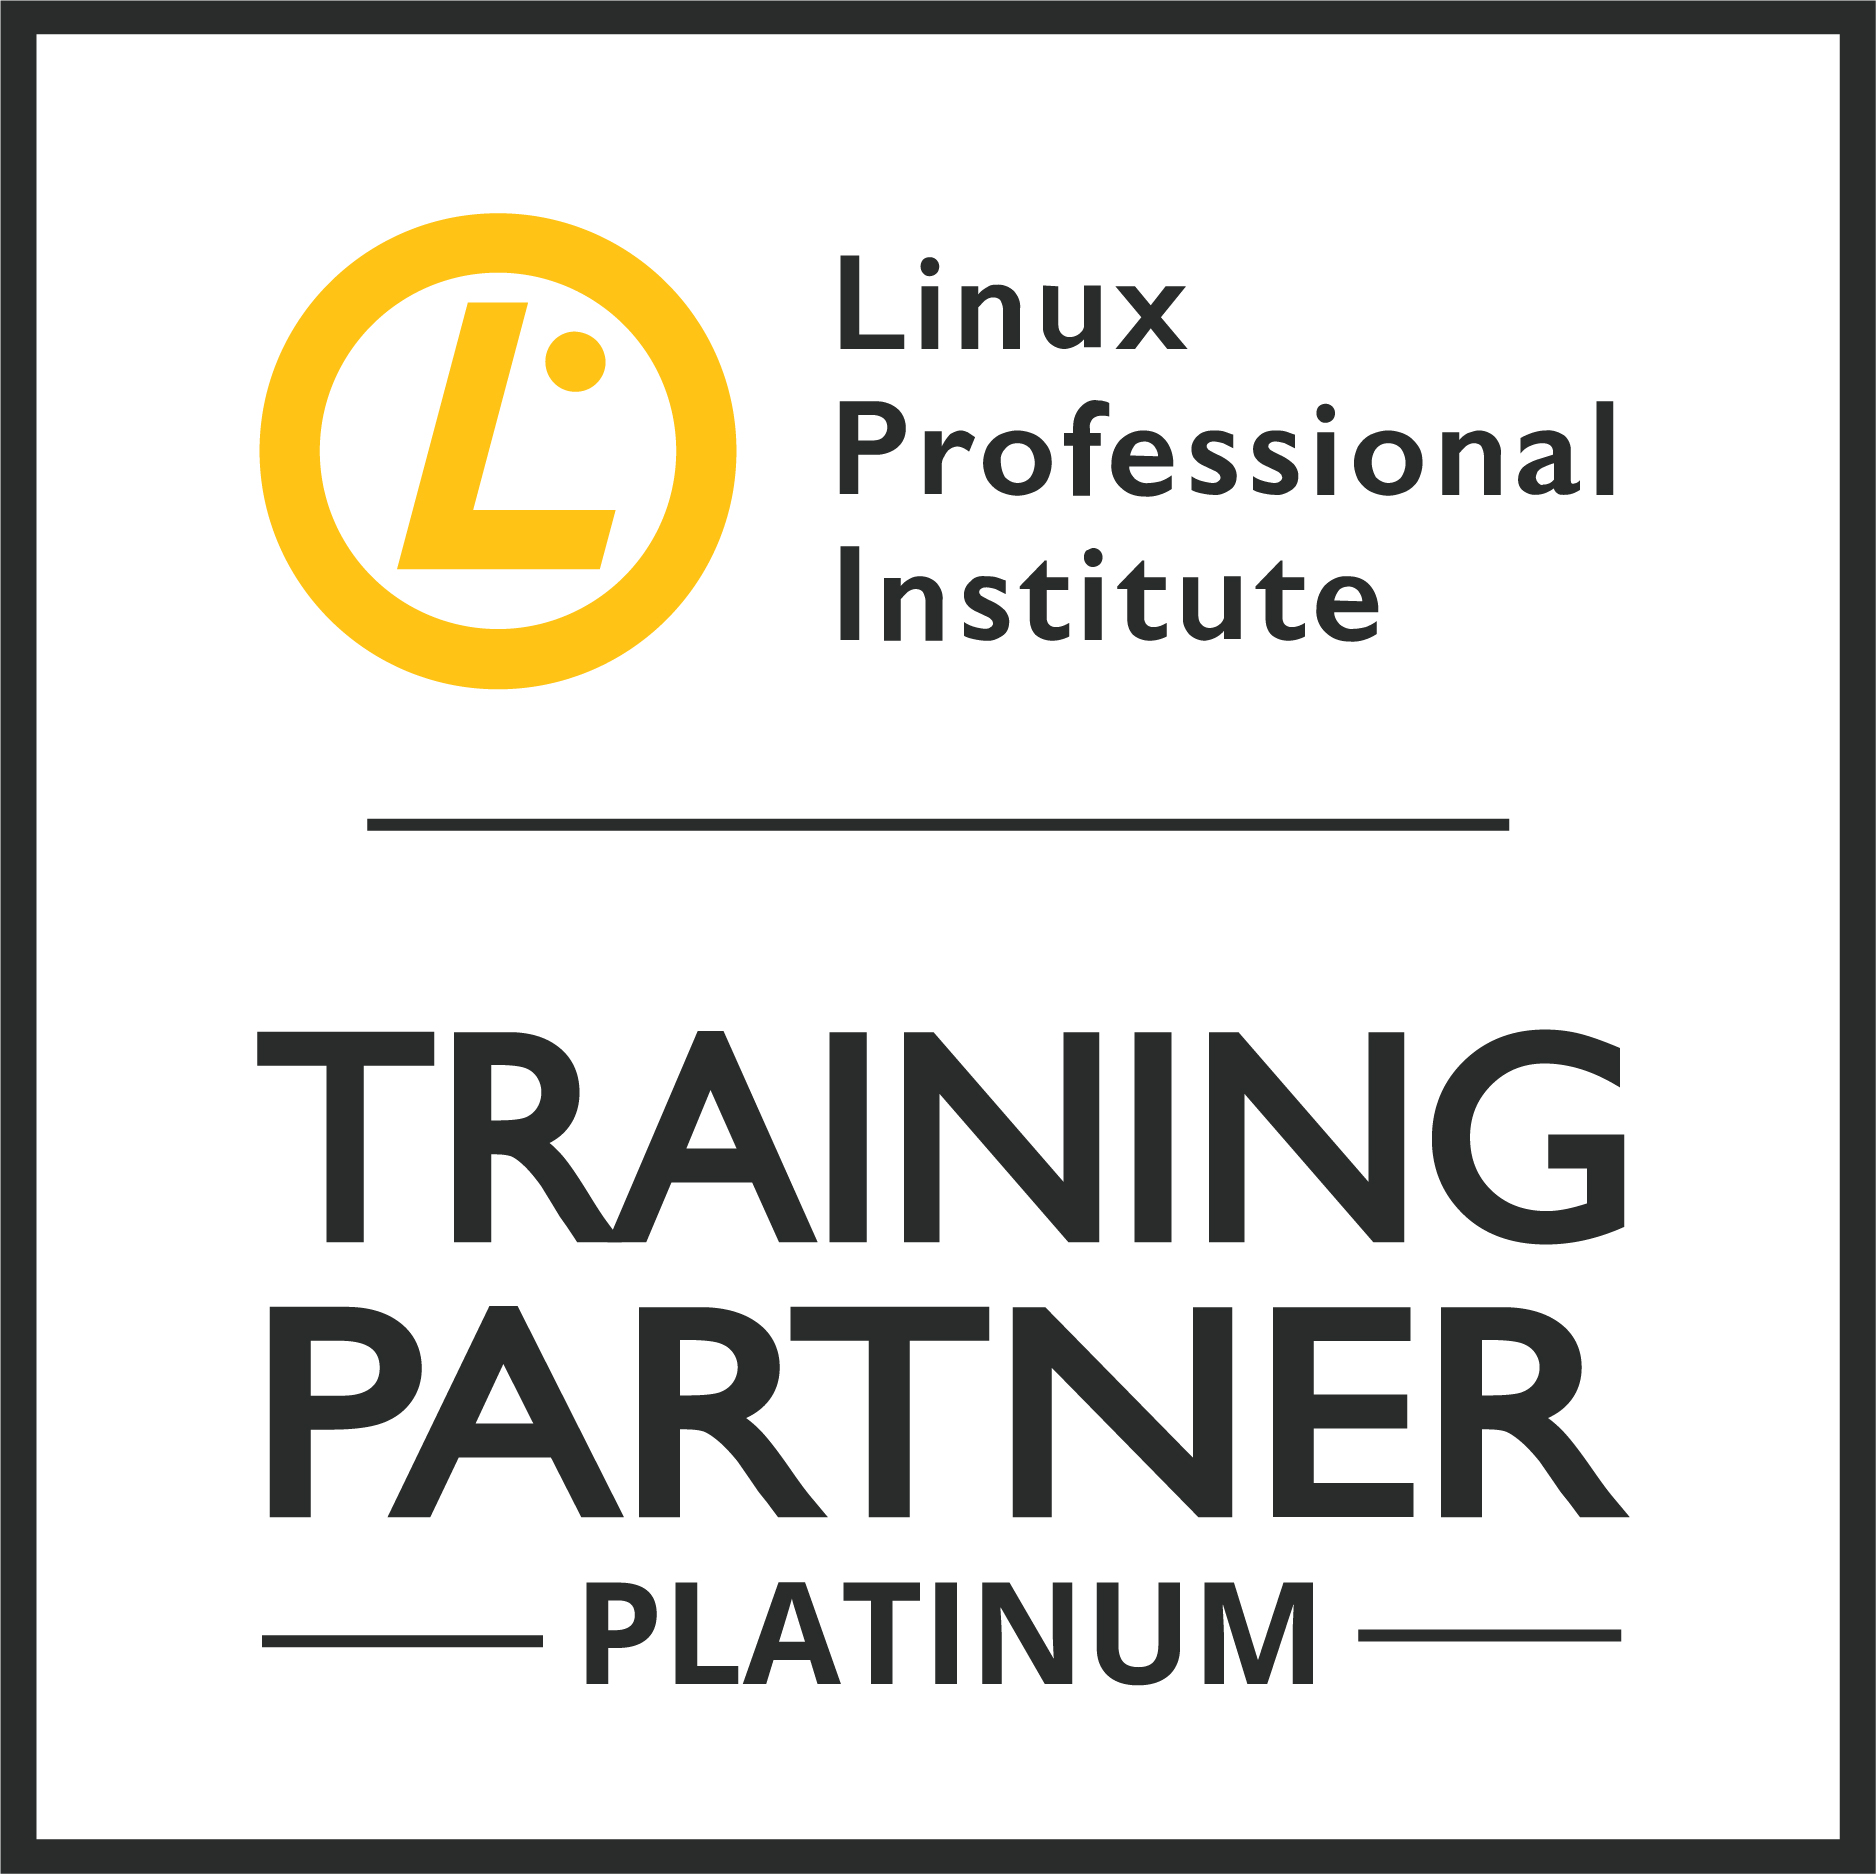 Official LPI Training Provider